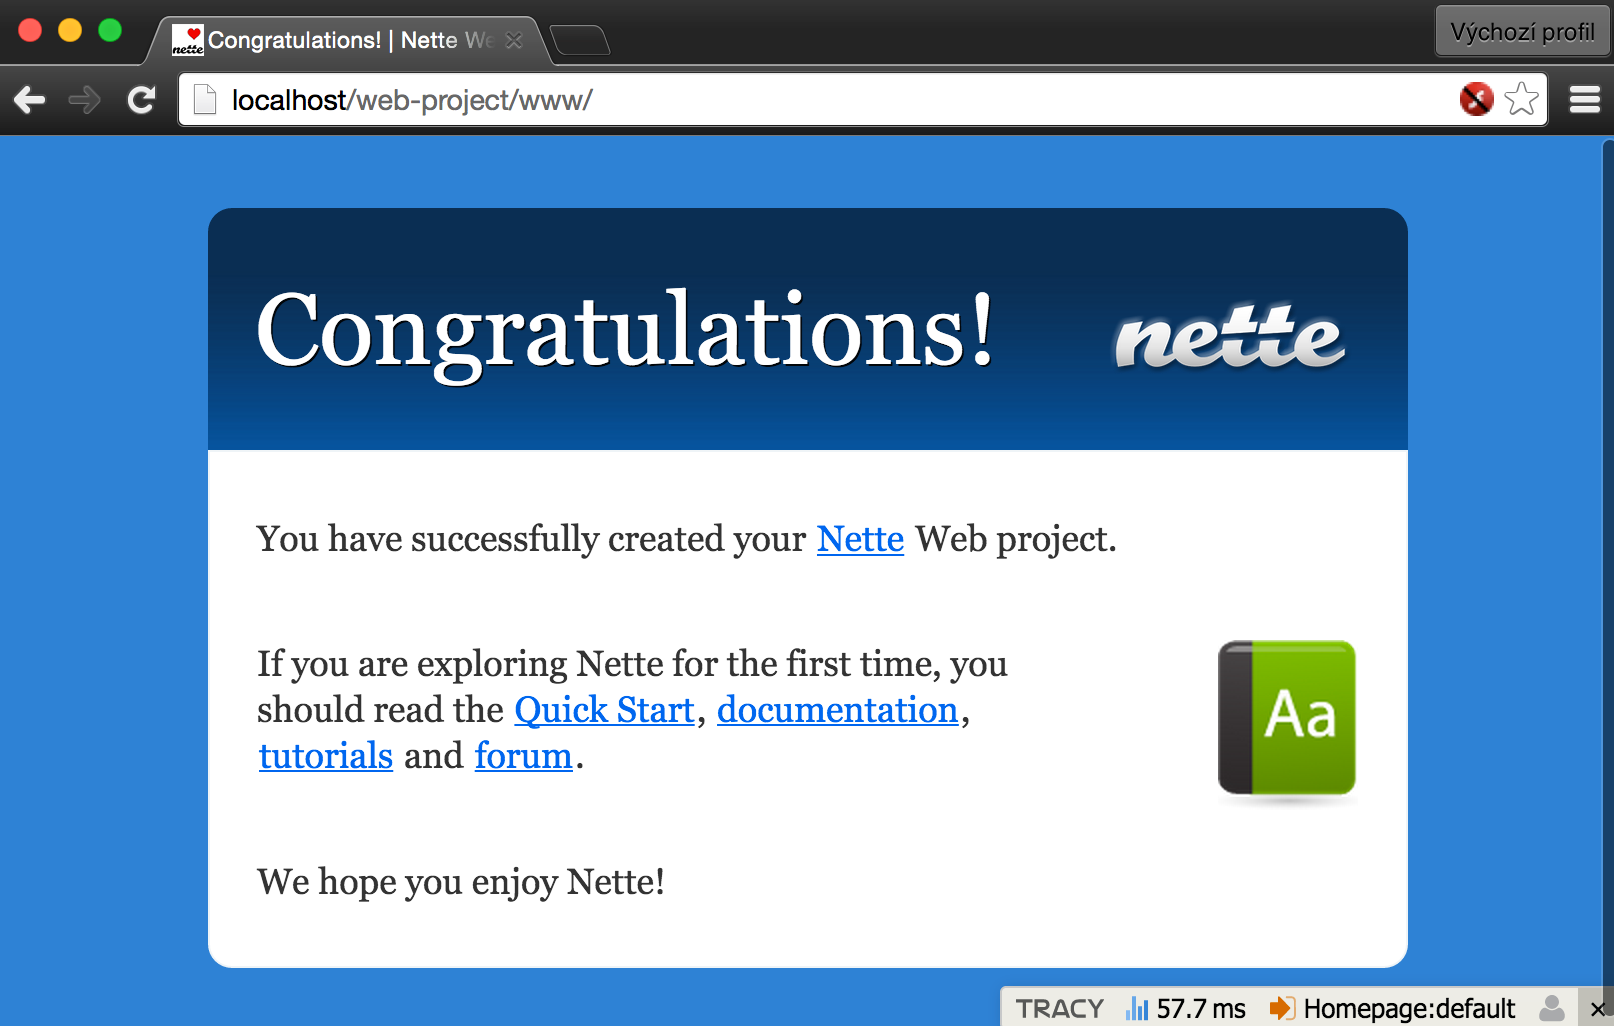 Nette Web Project